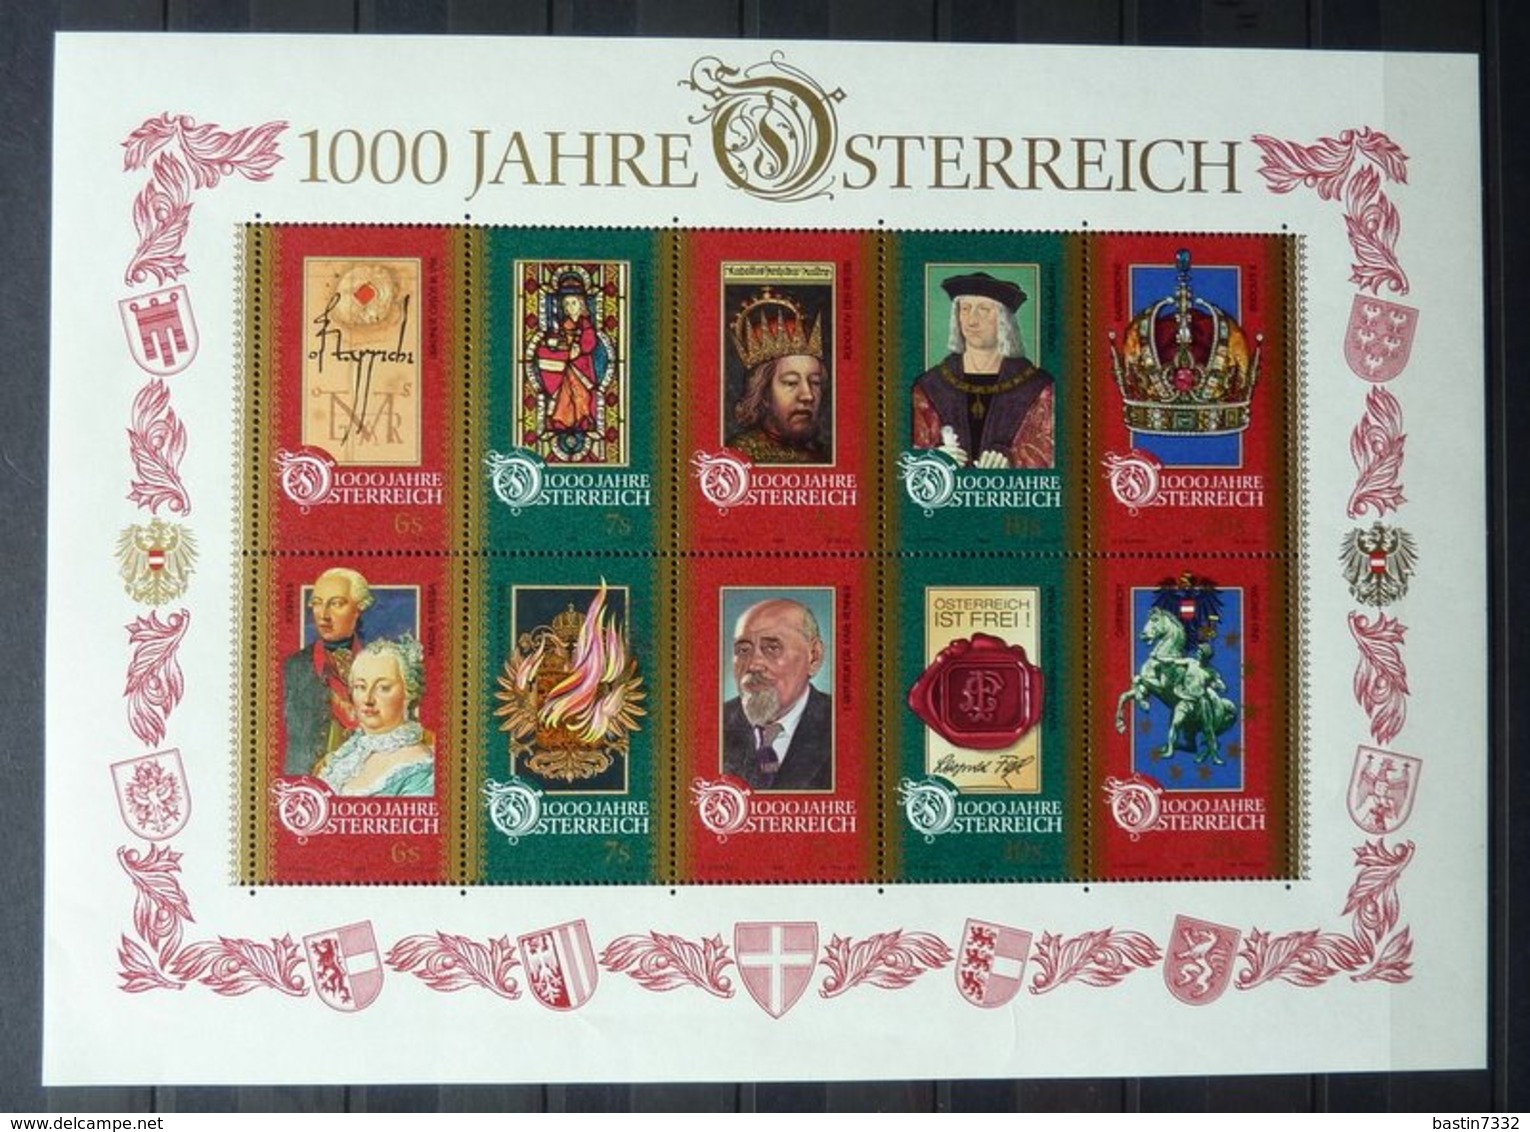 Austria/Österreich/Oostenrijk collection 1919-1991 in 2 stockbooks